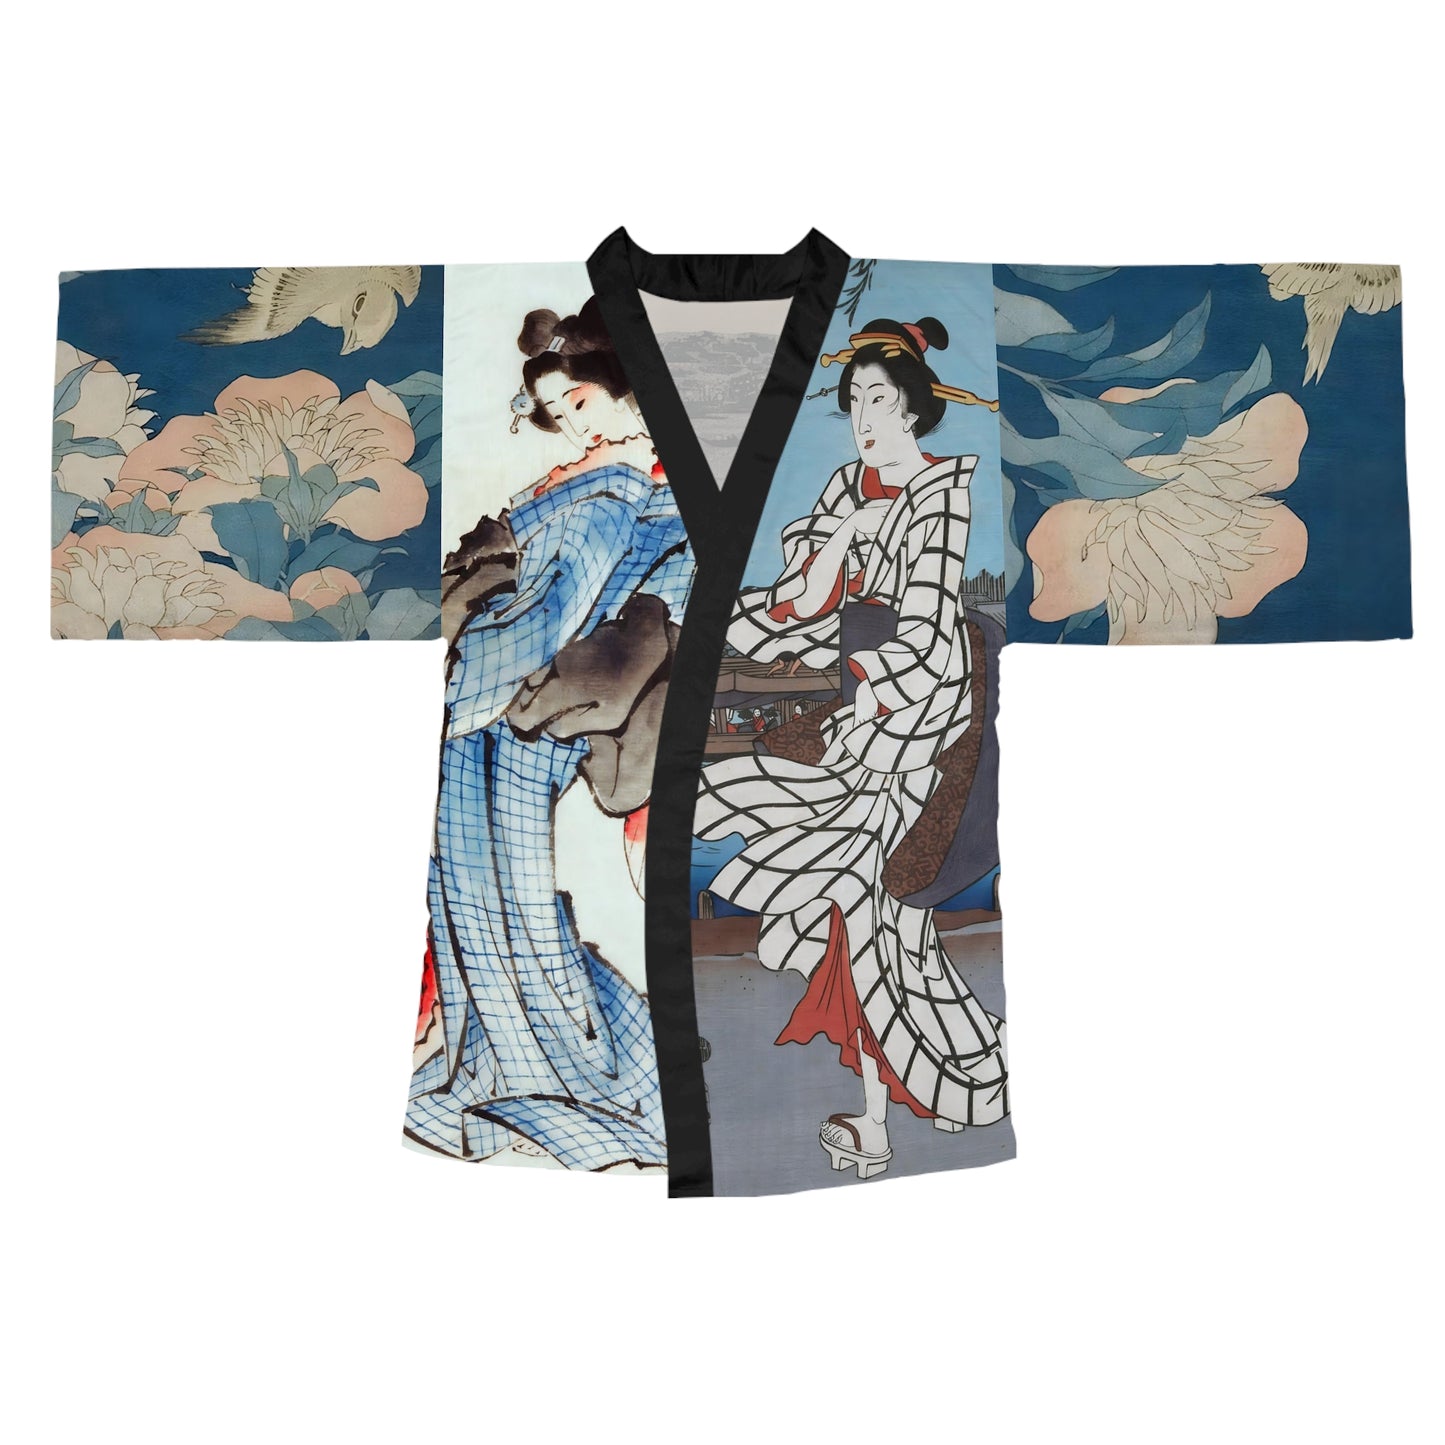 Japanese Kimono Robe Print Japan inspired Kimono Robe for Women